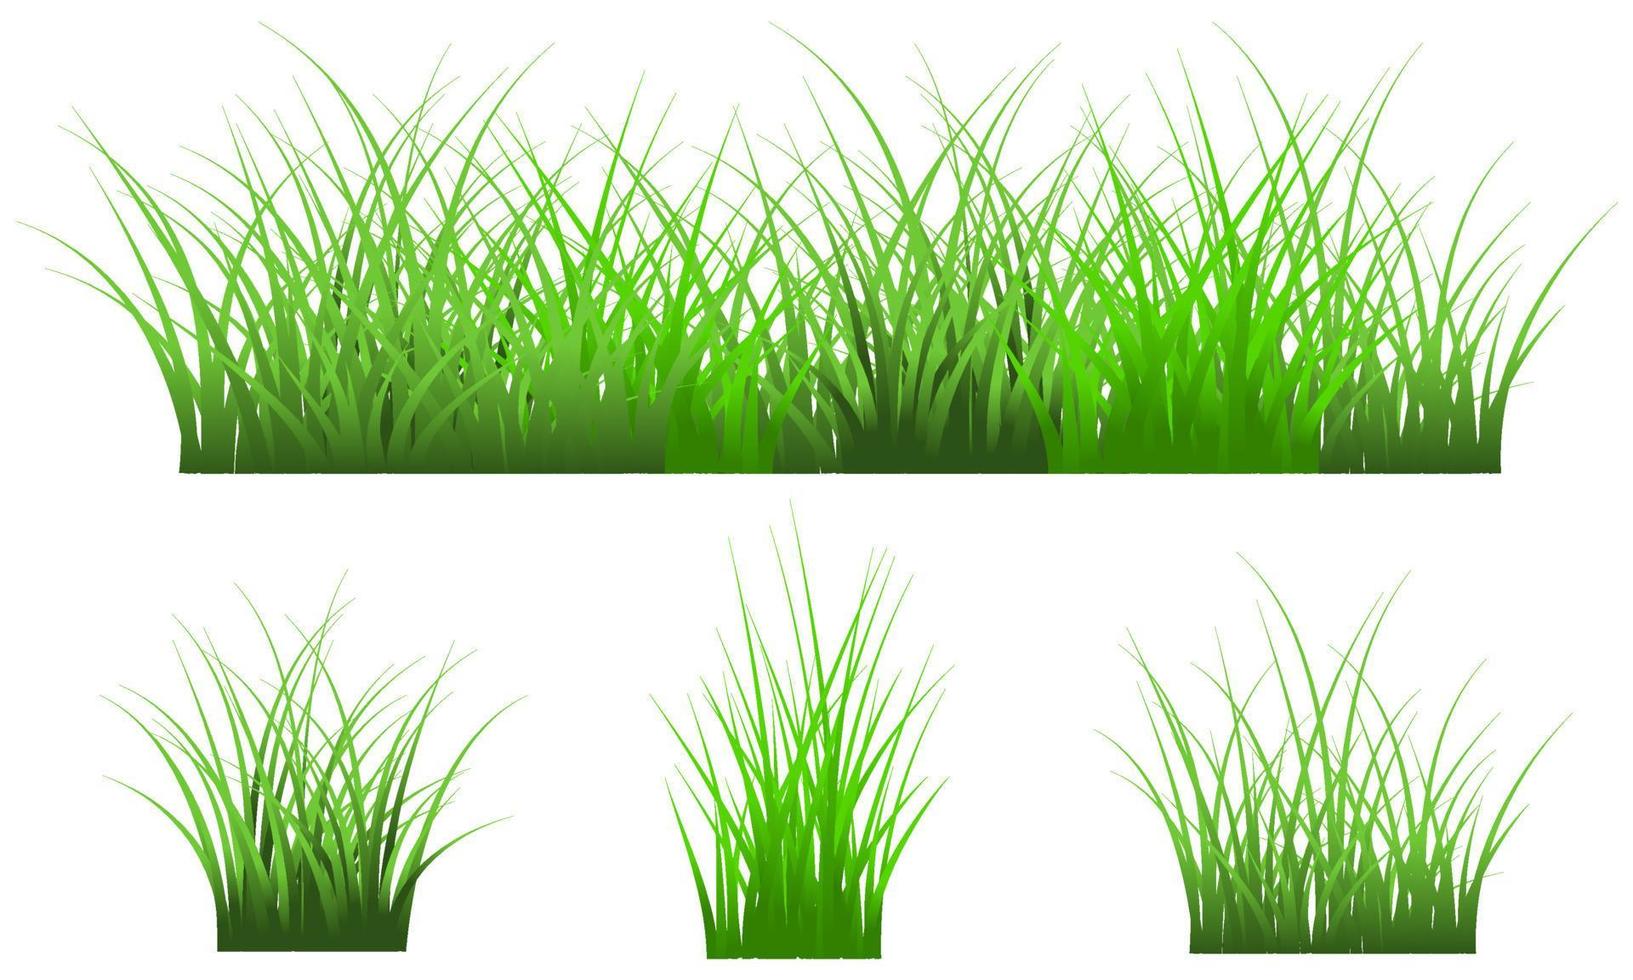 hierba verde aislada sobre fondo blanco, conjunto de hierba de vector libre